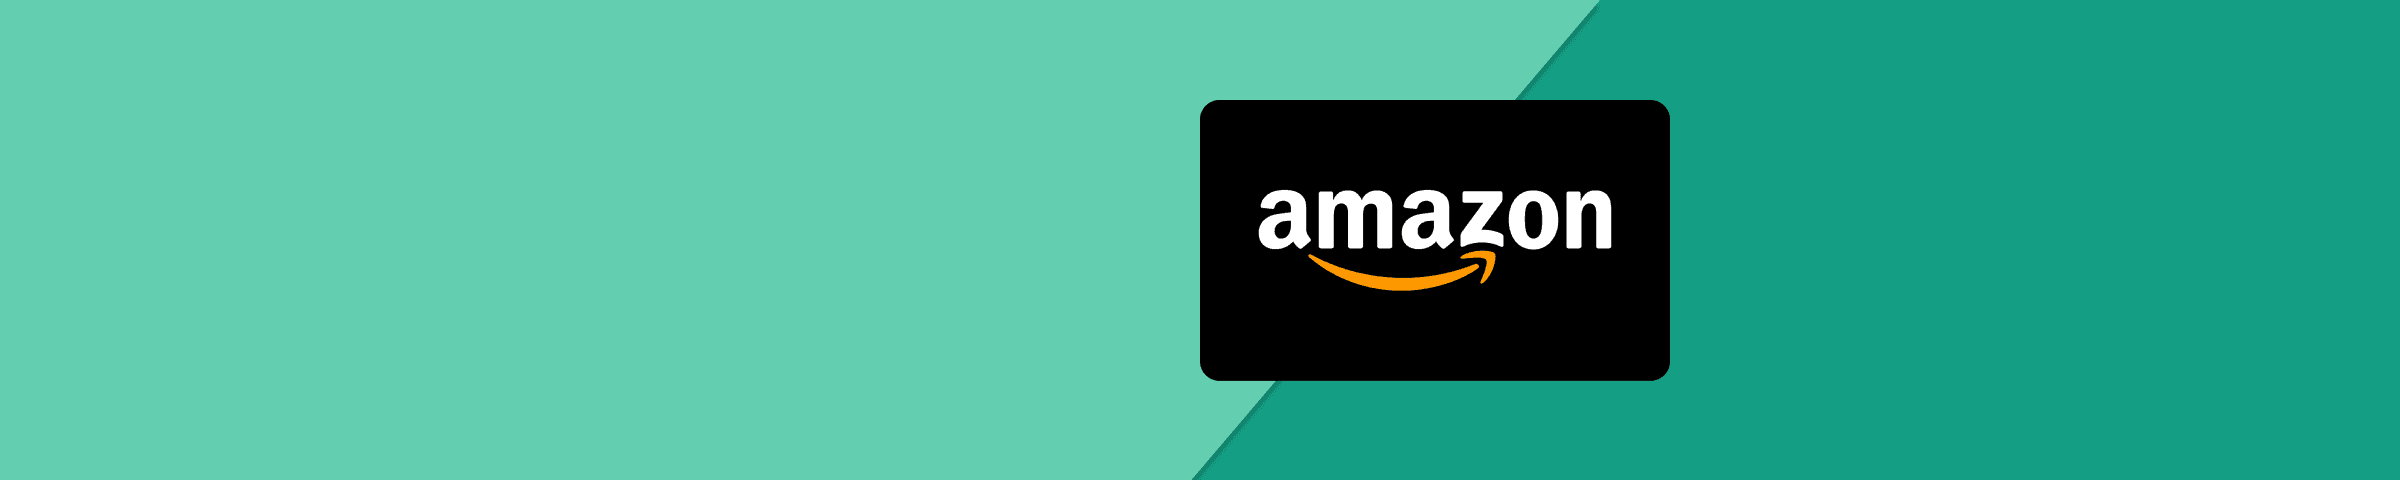 Amazon.de Gift Card